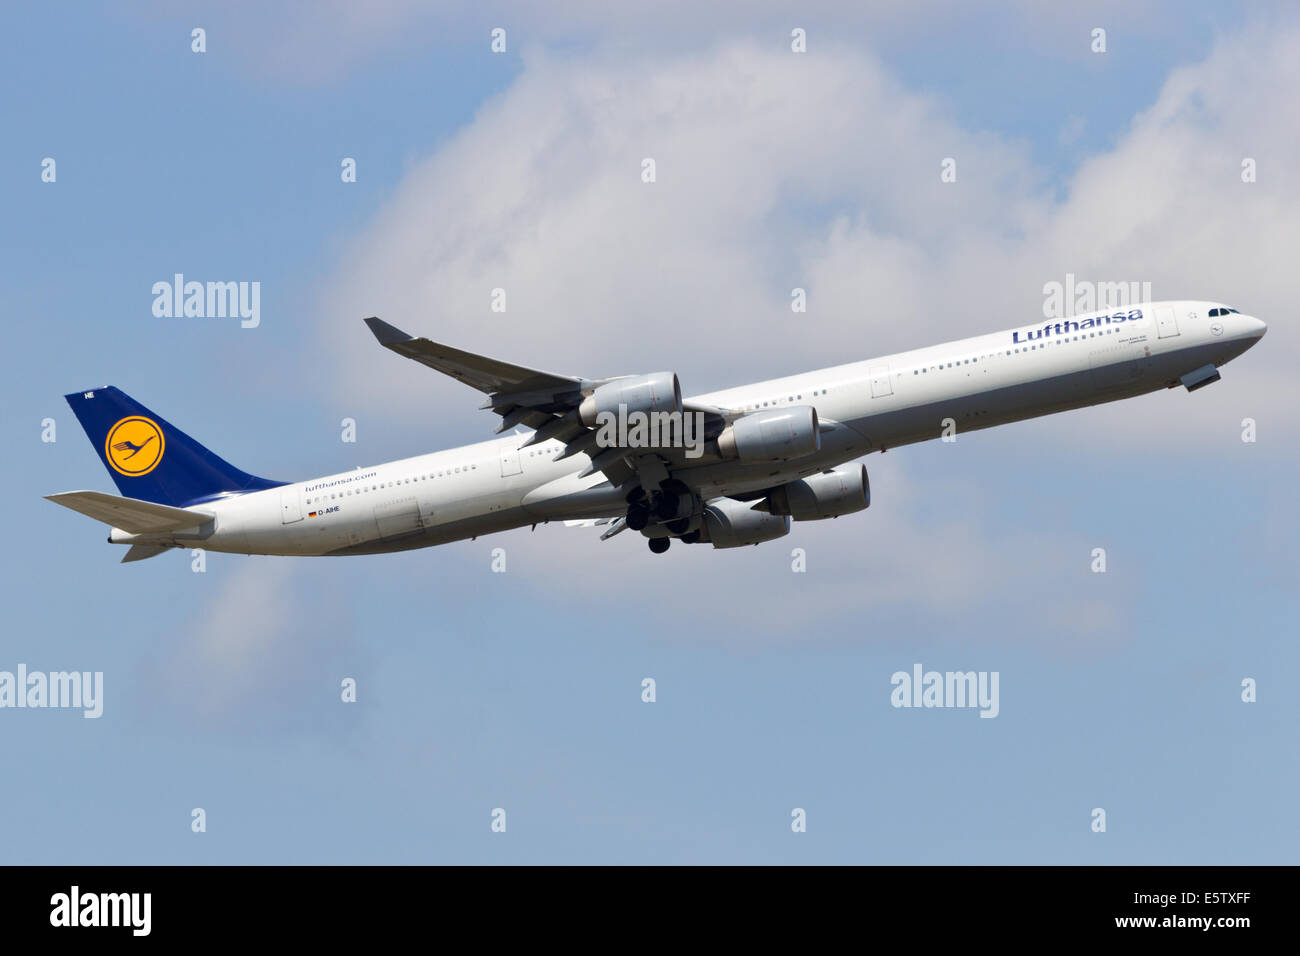 Lufthansa Airbus A340 take off Stock Photo